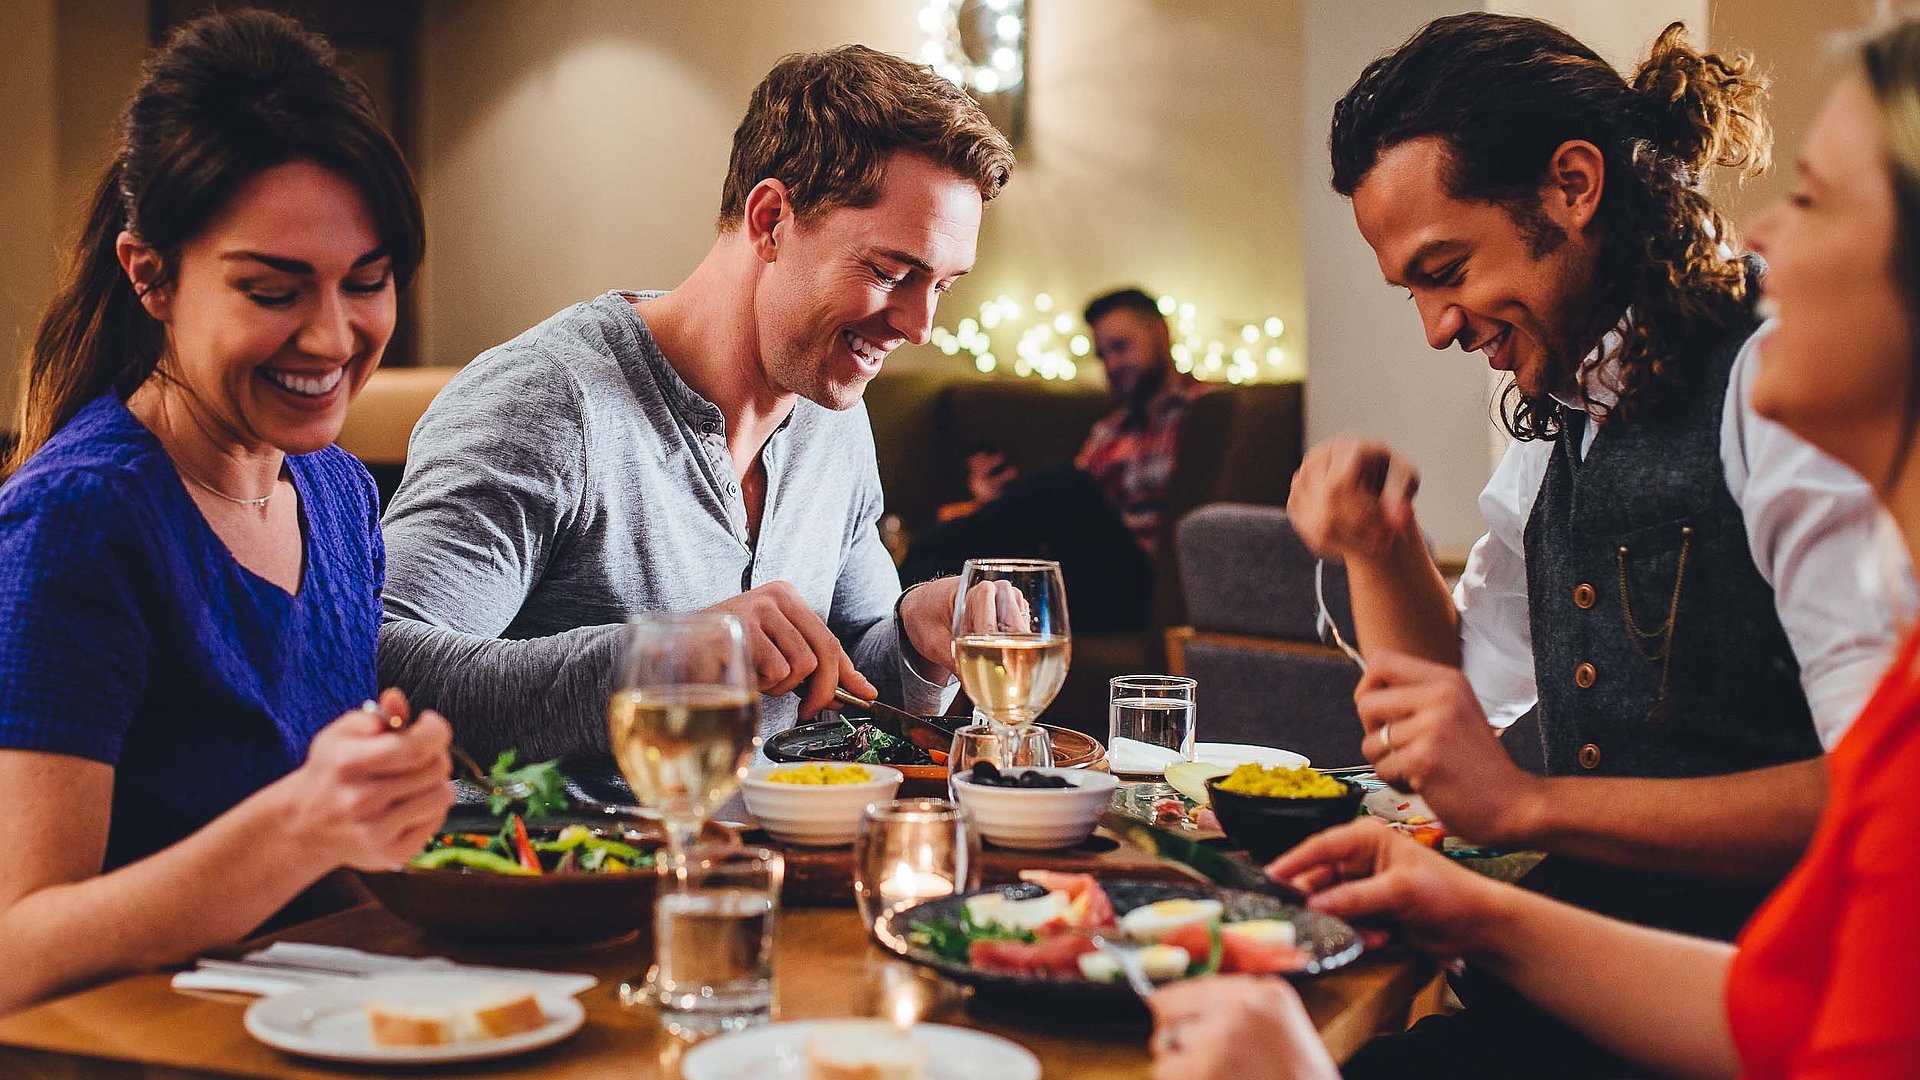 Gastronomie in Bayern: Top Restaurant Tipps und Restaurant Empfehlungen für einen schönen Abend mit Freunden oder ein tolles Geschäftsessen.